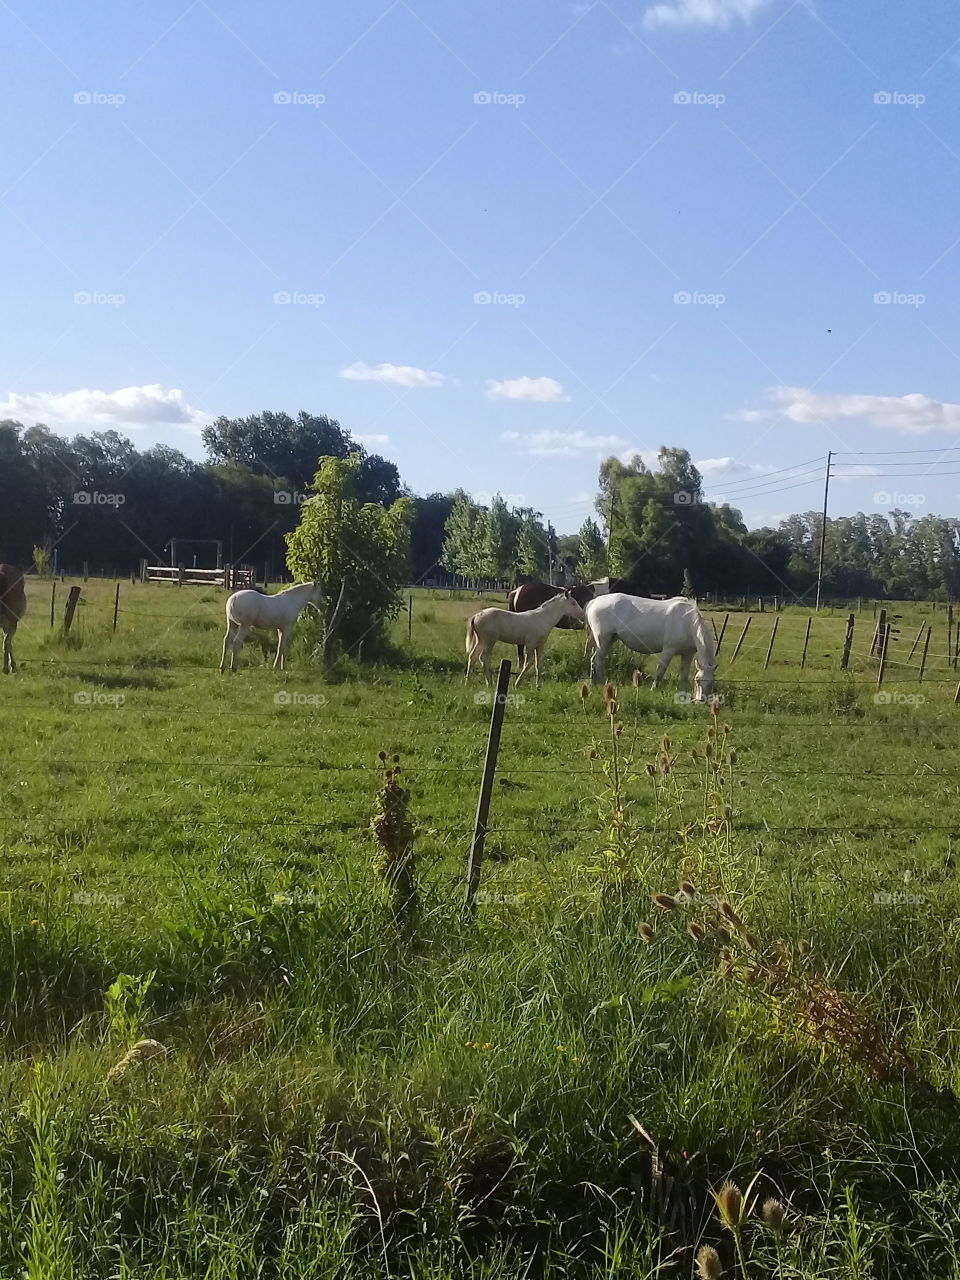 imágenes de caballos pastando en el campo en una calurosa y despejada tarde de verano.